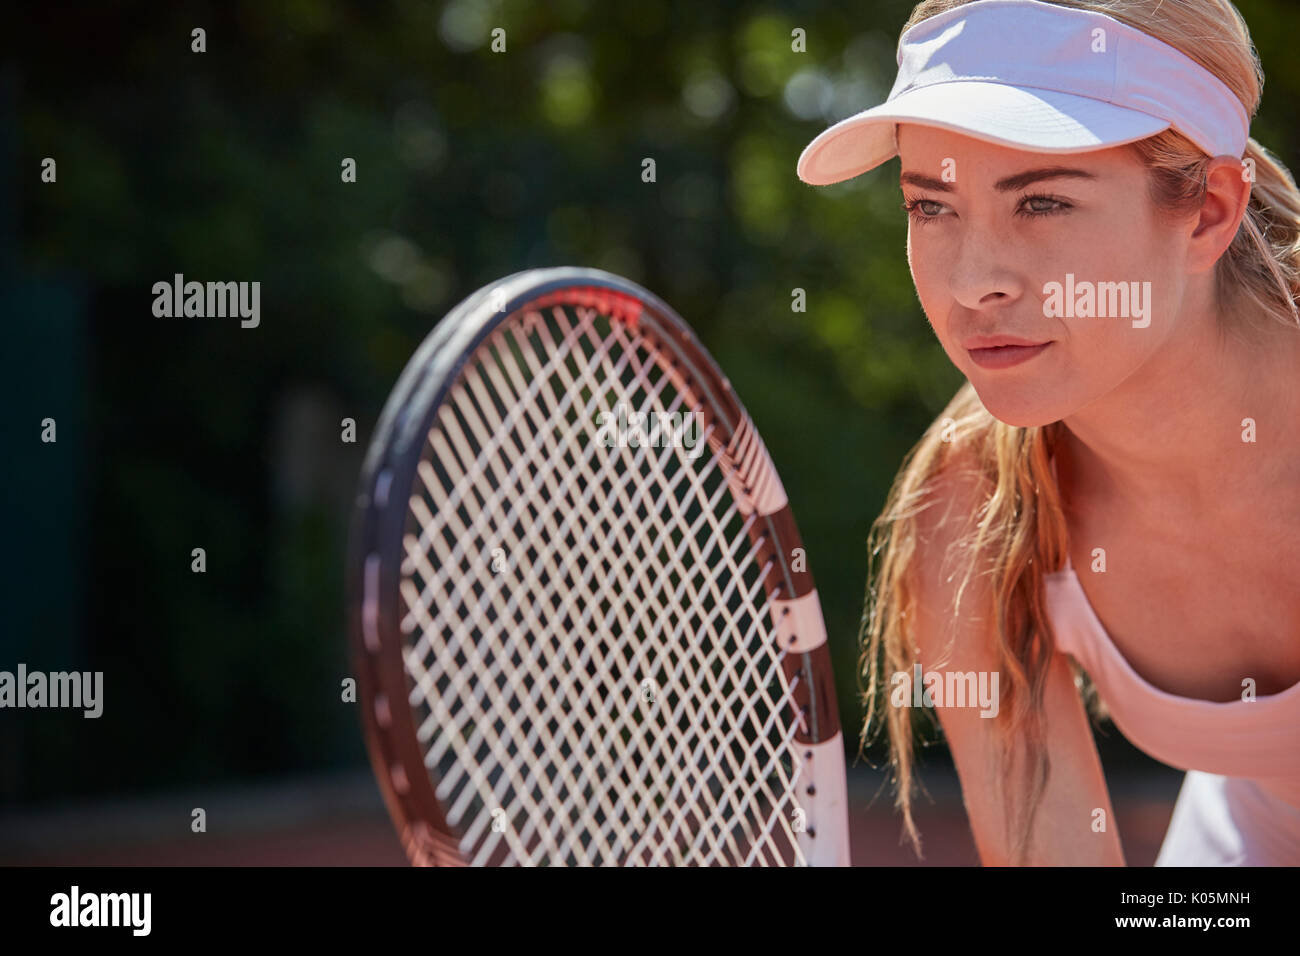 Focalizzato femmina giovane giocatore di tennis holding racchetta da tennis Foto Stock